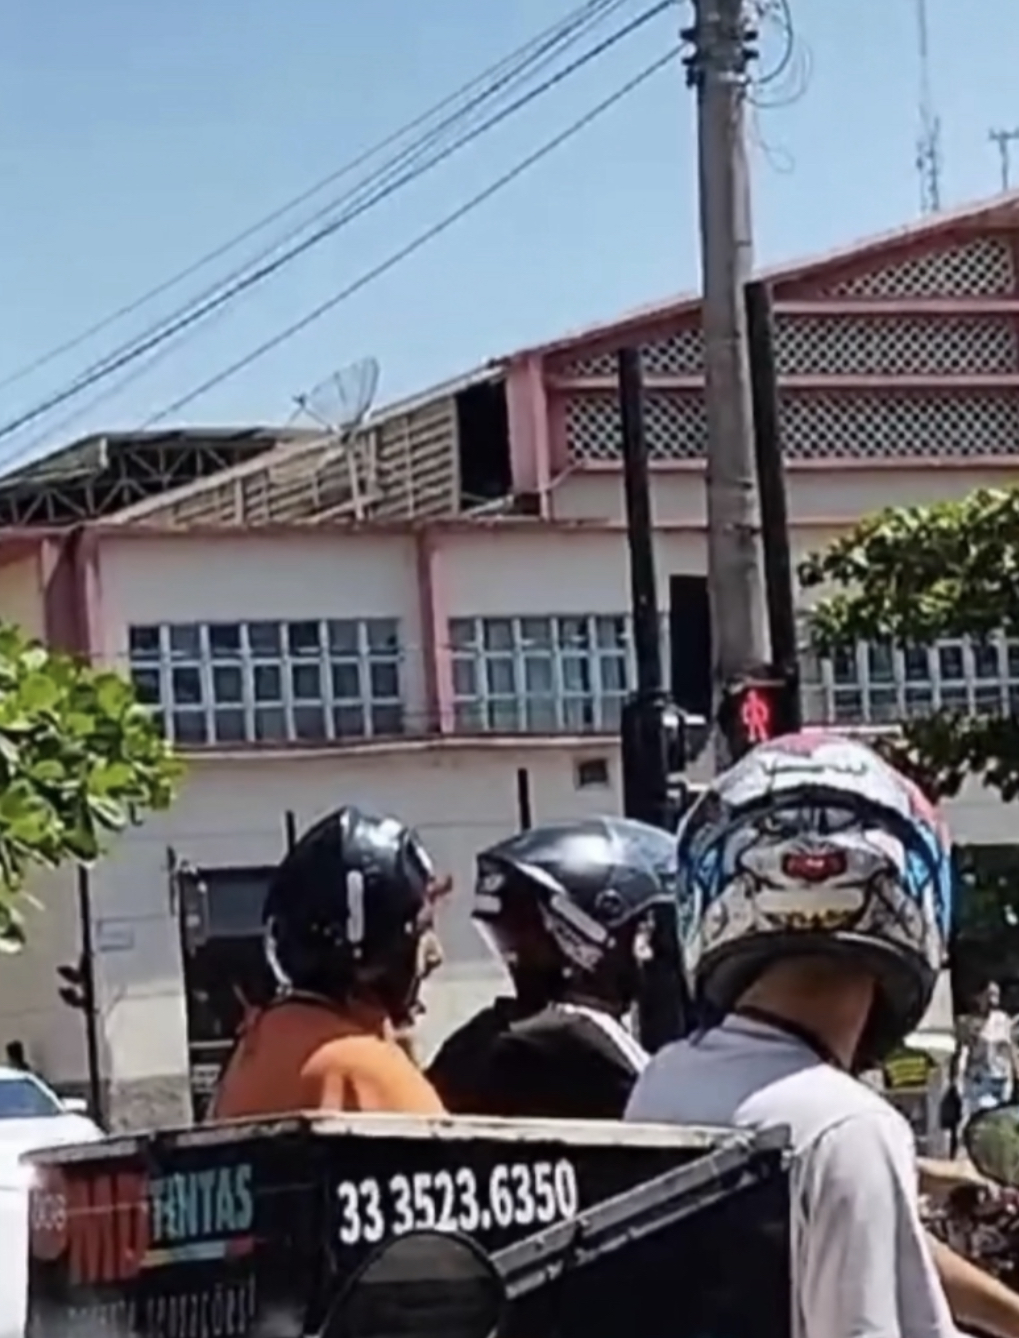 Mulher usa capacete de “ponta a cabeça” em garupa de moto e chama a atenção no trânsito em Teófilo Otoni